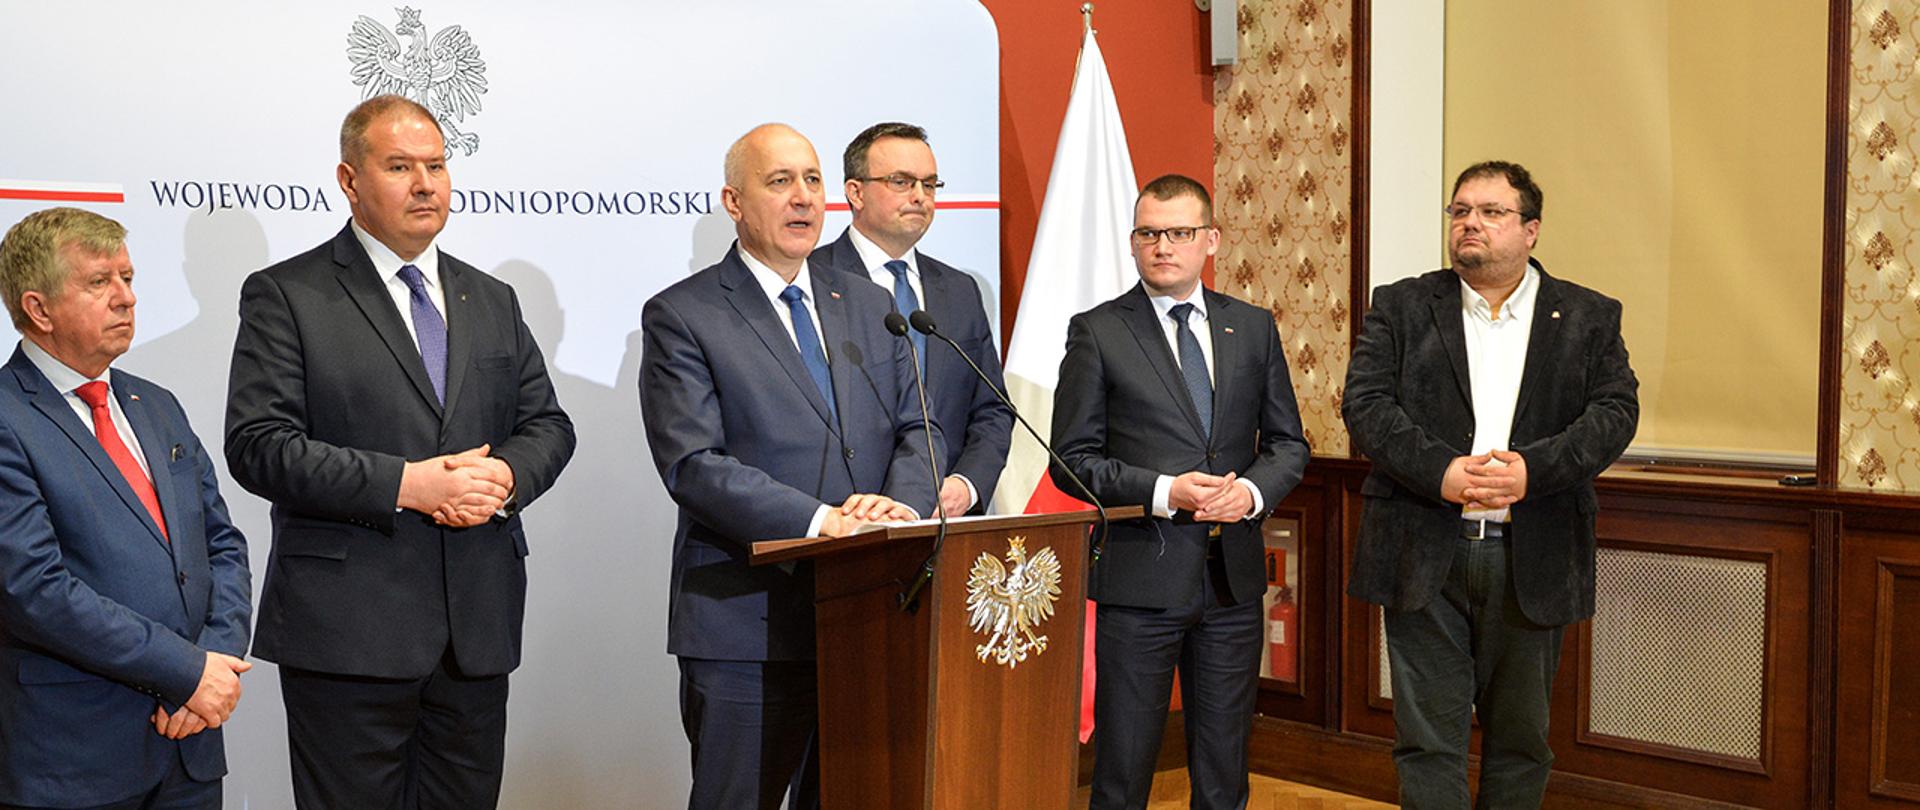 Minister Joachim Brudziński oraz wiceminister Paweł Szefernaker w Zachodniopomorskim Urzędzie Wojewódzkim w Szczecinie